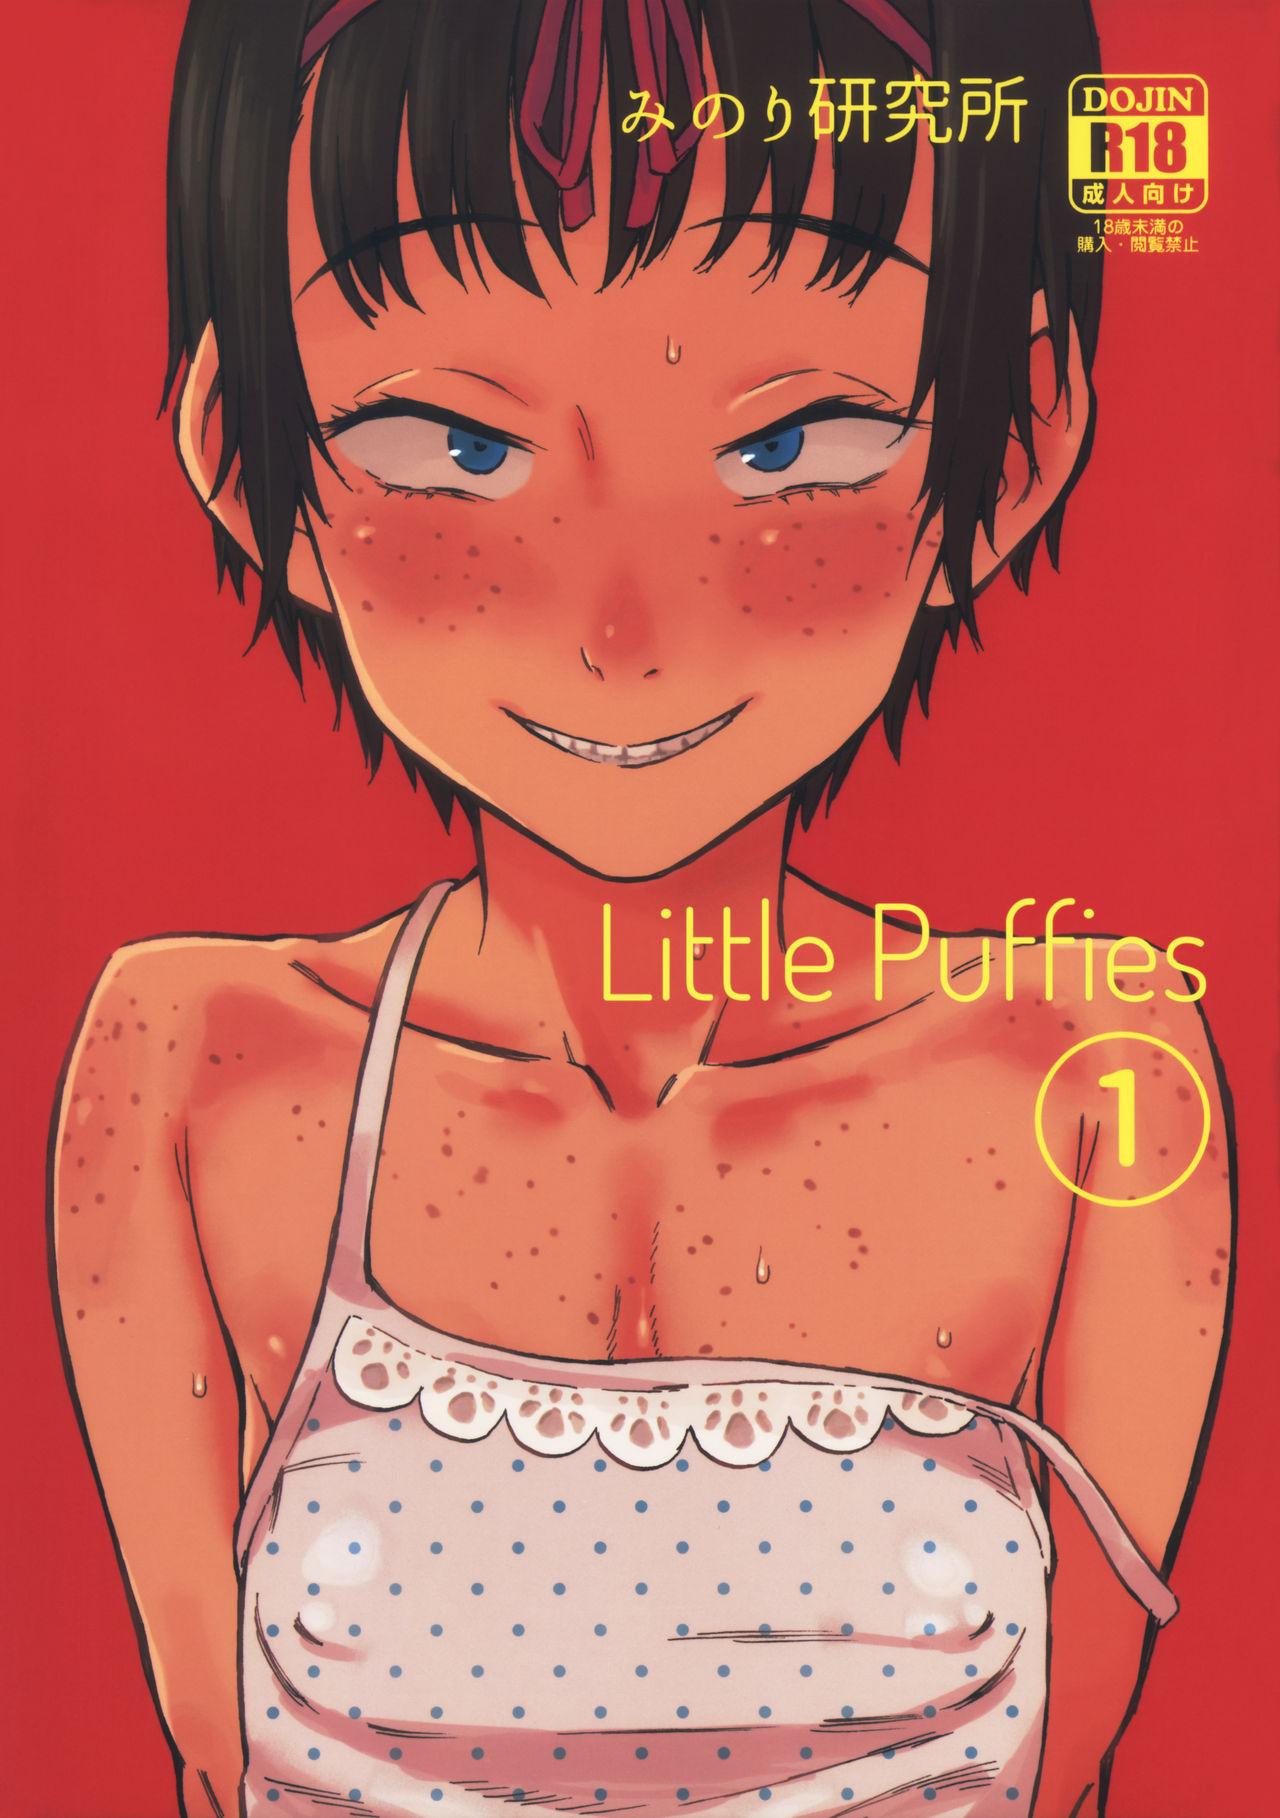 Chiisana Puffy 1 | Little Puffies 1 0